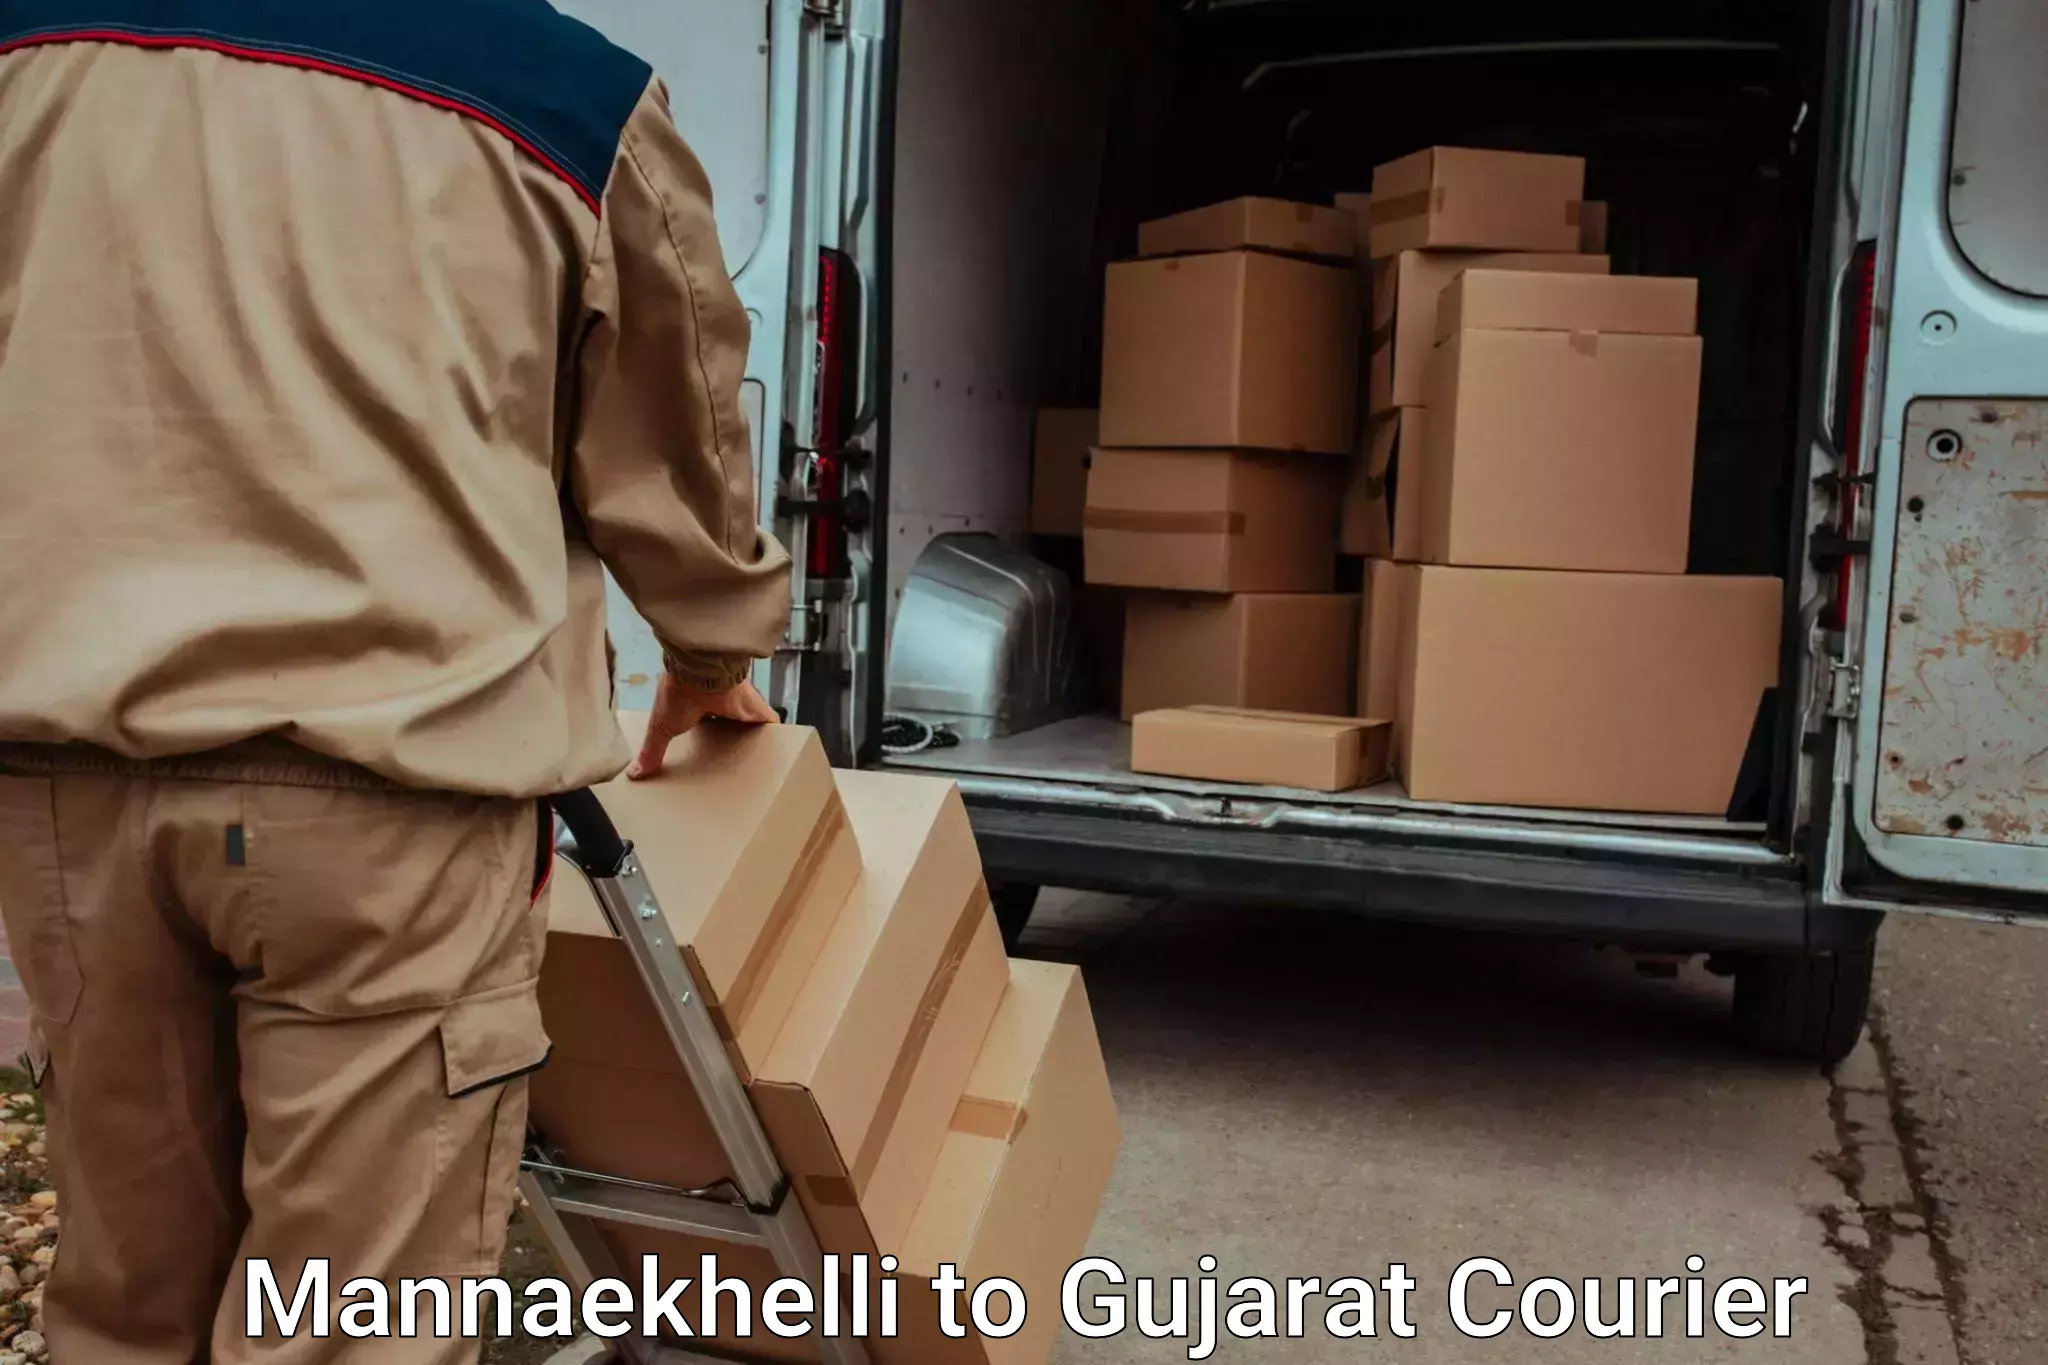 Home goods moving company Mannaekhelli to Godhra